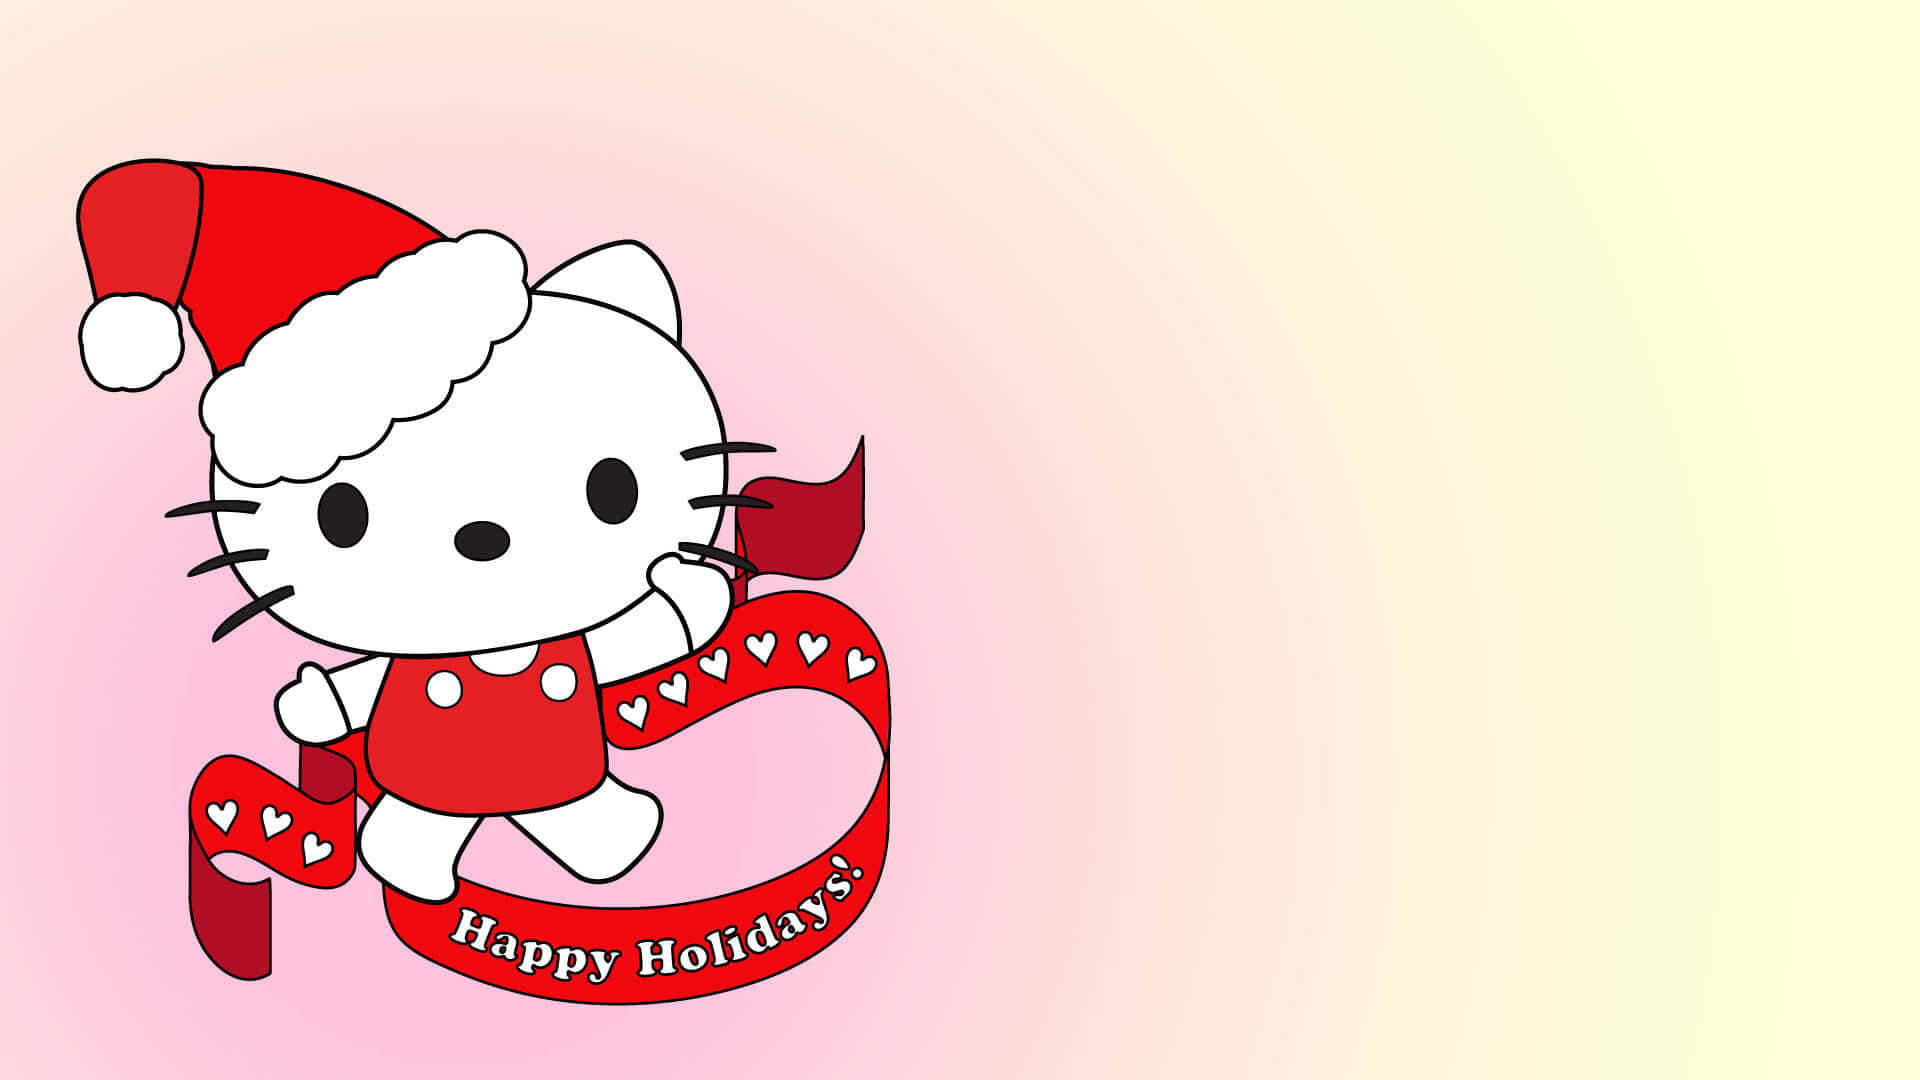 Hello Kitty - Happy Poster